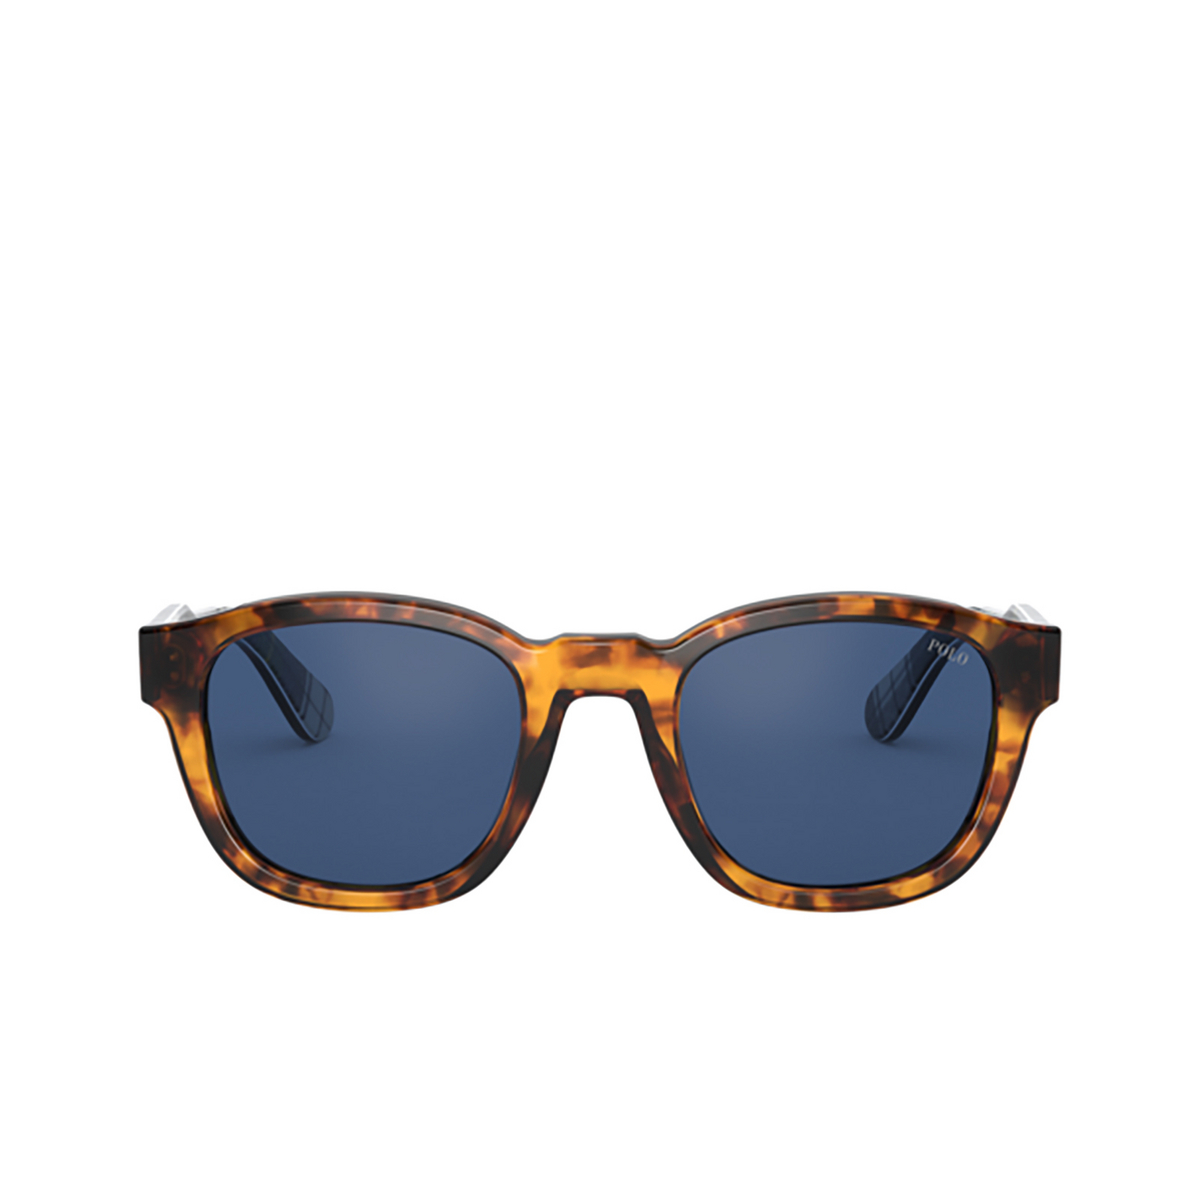 Polo Ralph Lauren® Square Sunglasses: PH4159 color Shiny Antique Tortoise 513480 - front view.